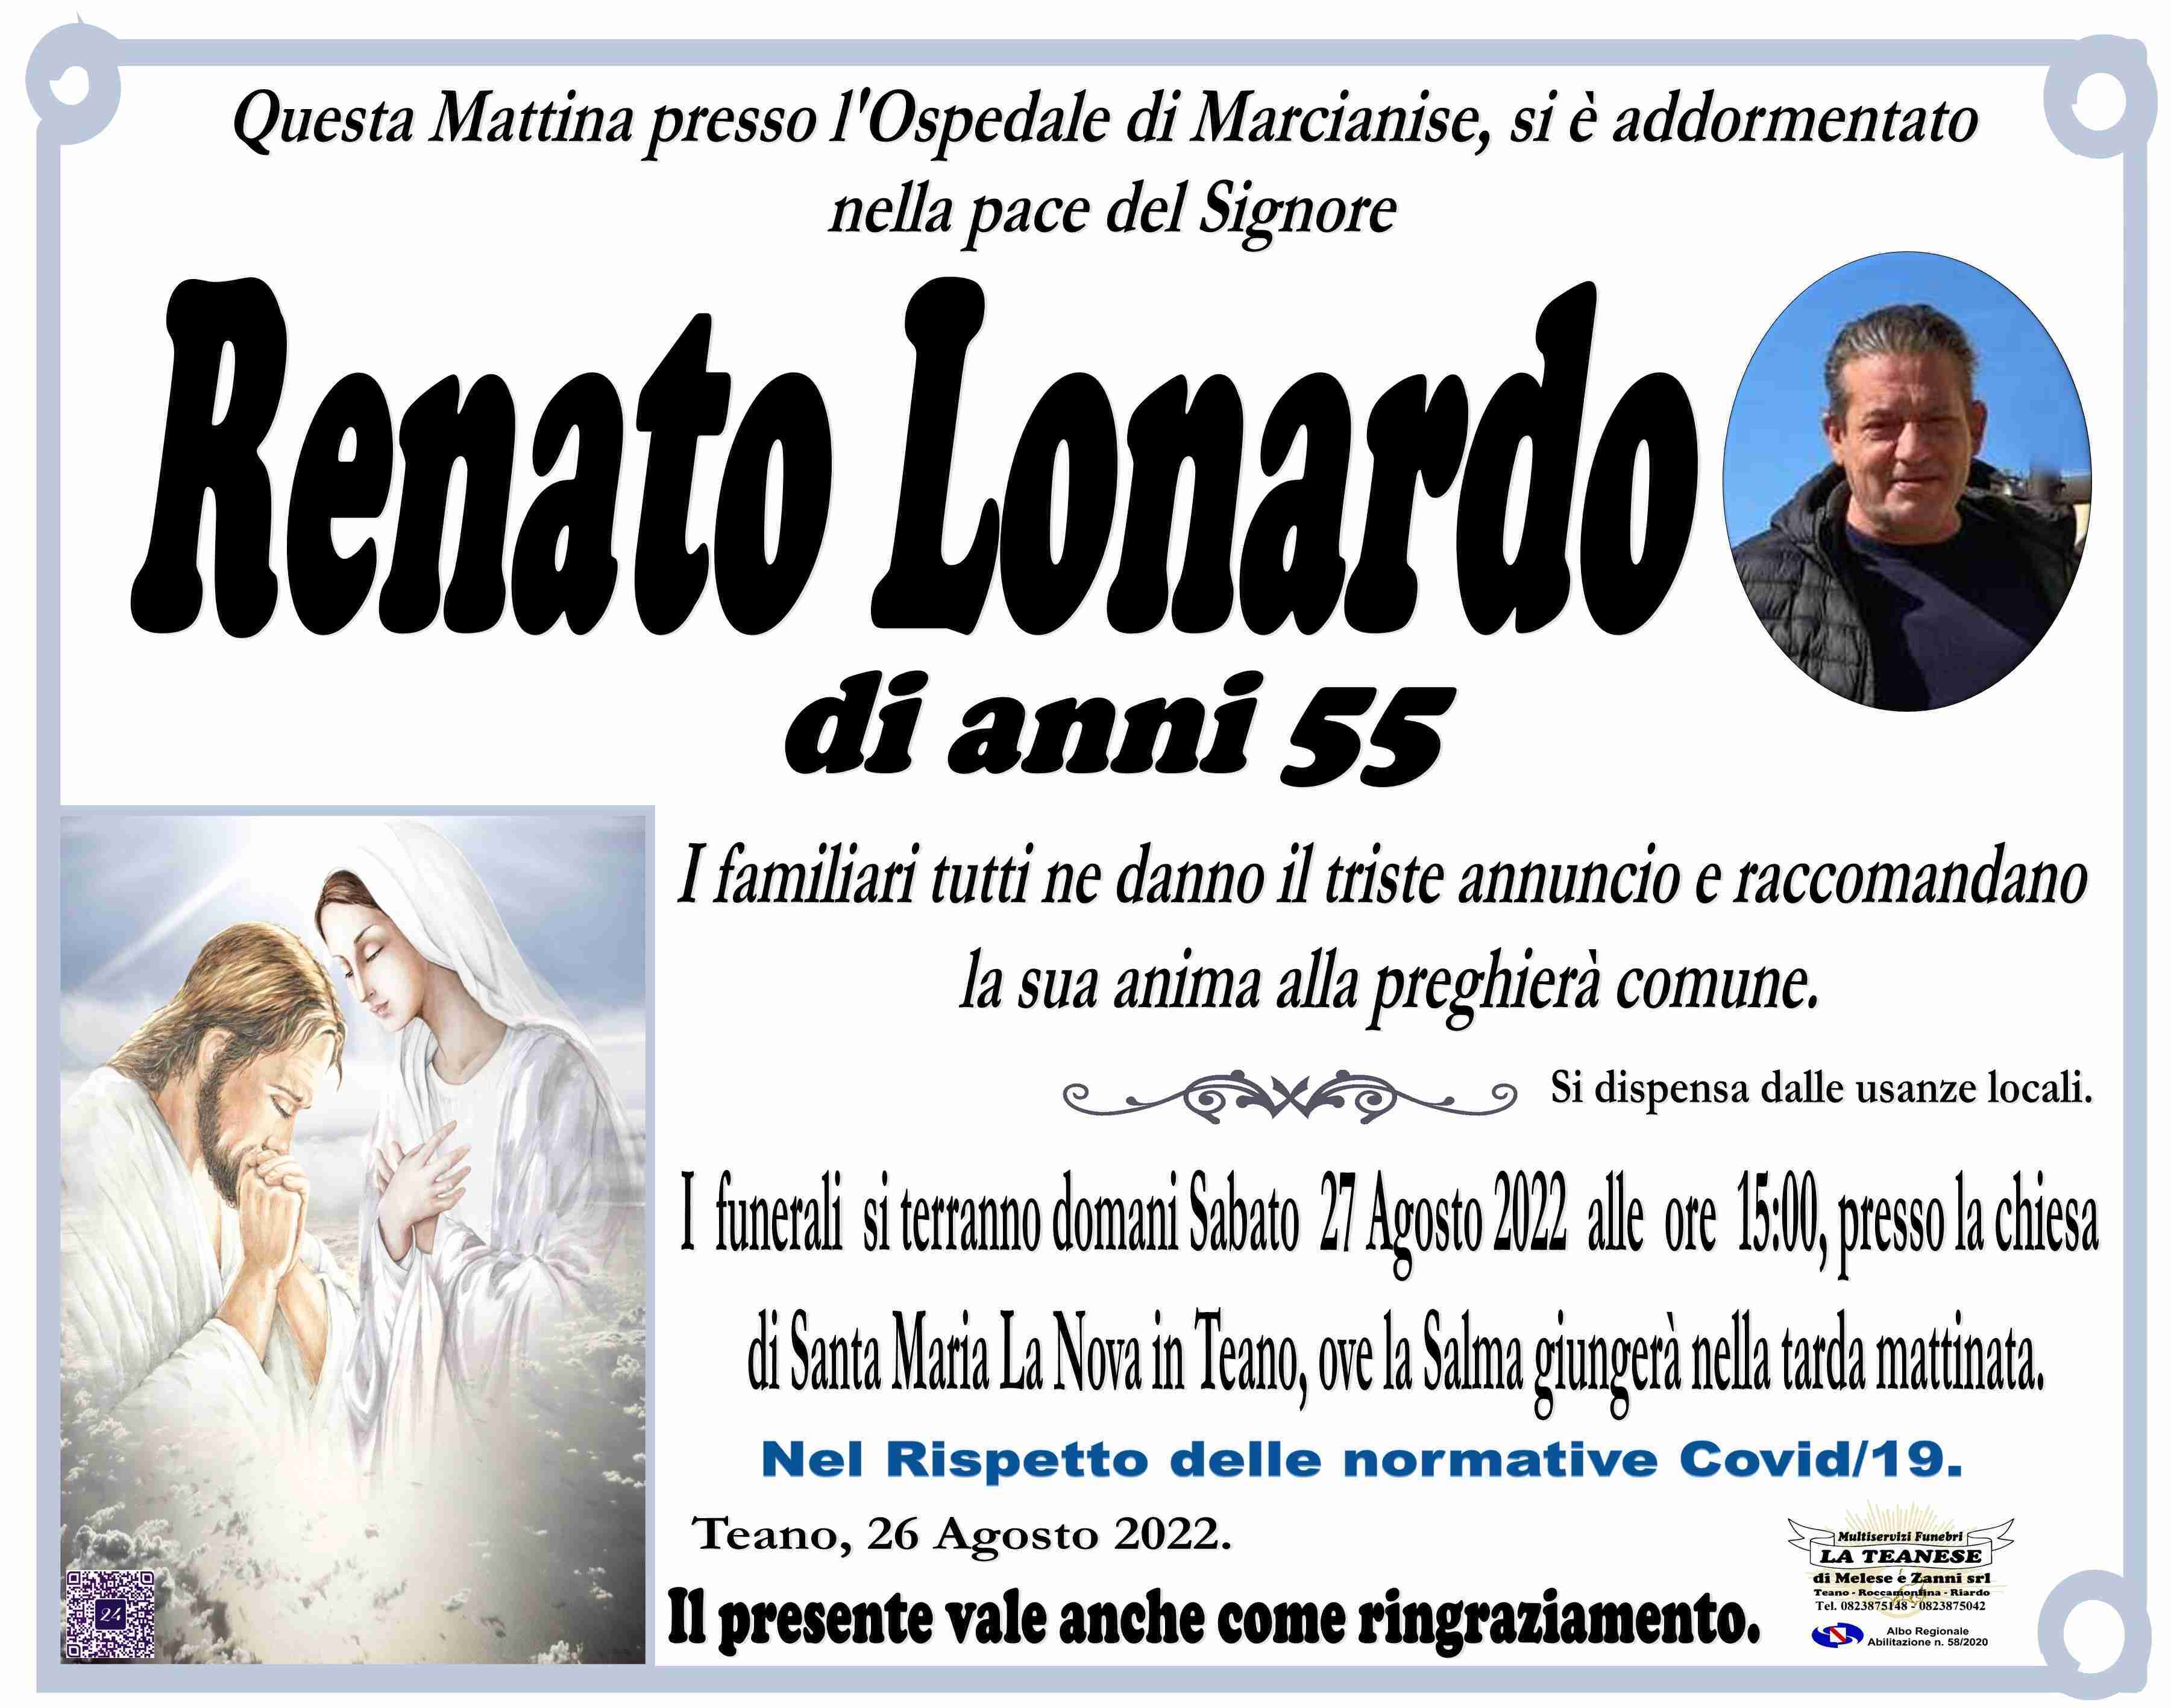 Renato Lonardo